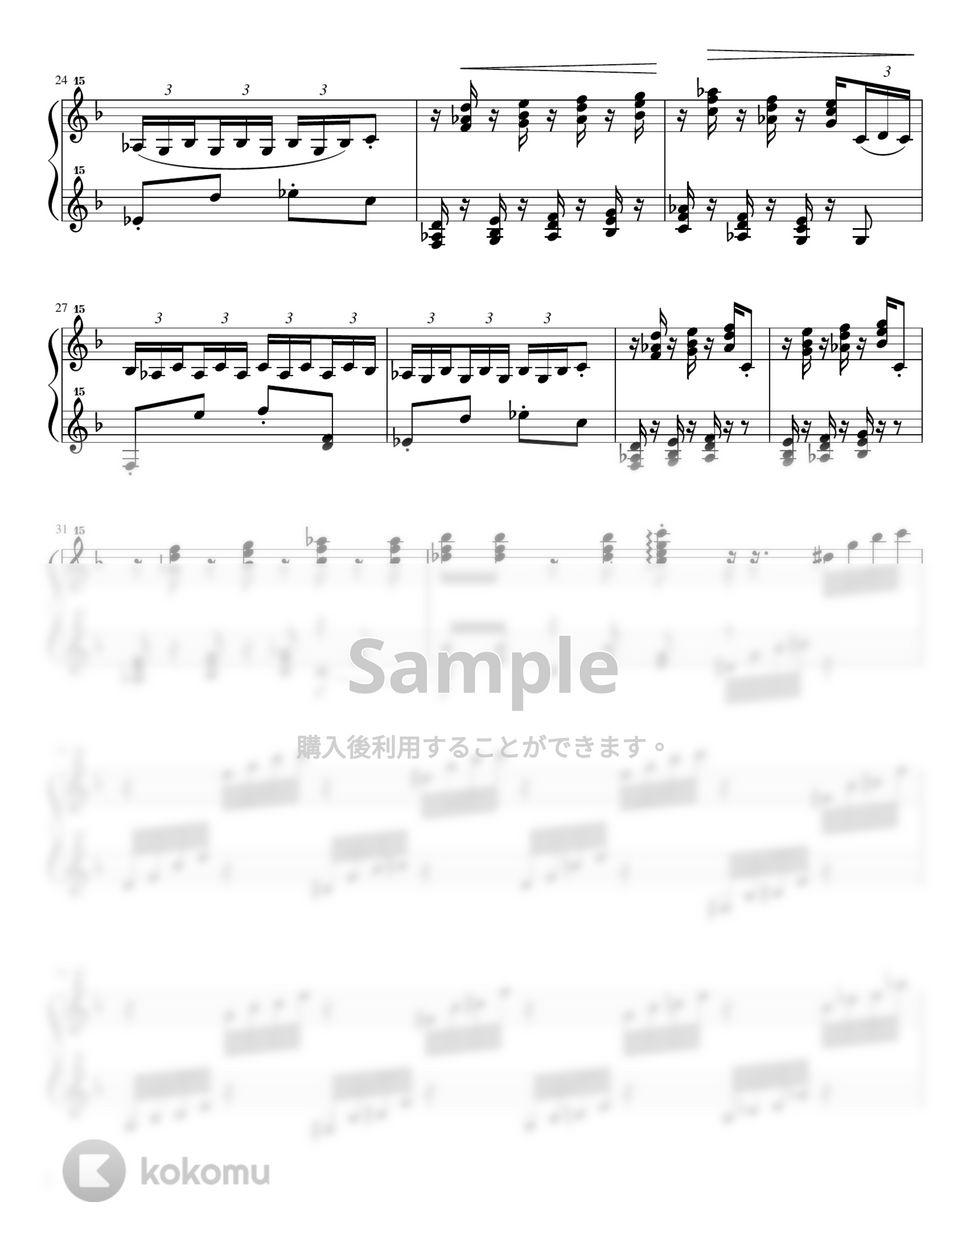 チャイコフスキー - 金平糖の踊り くるみ割り人形 (トイピアノ / クラシック / 32鍵盤) by 川西三裕